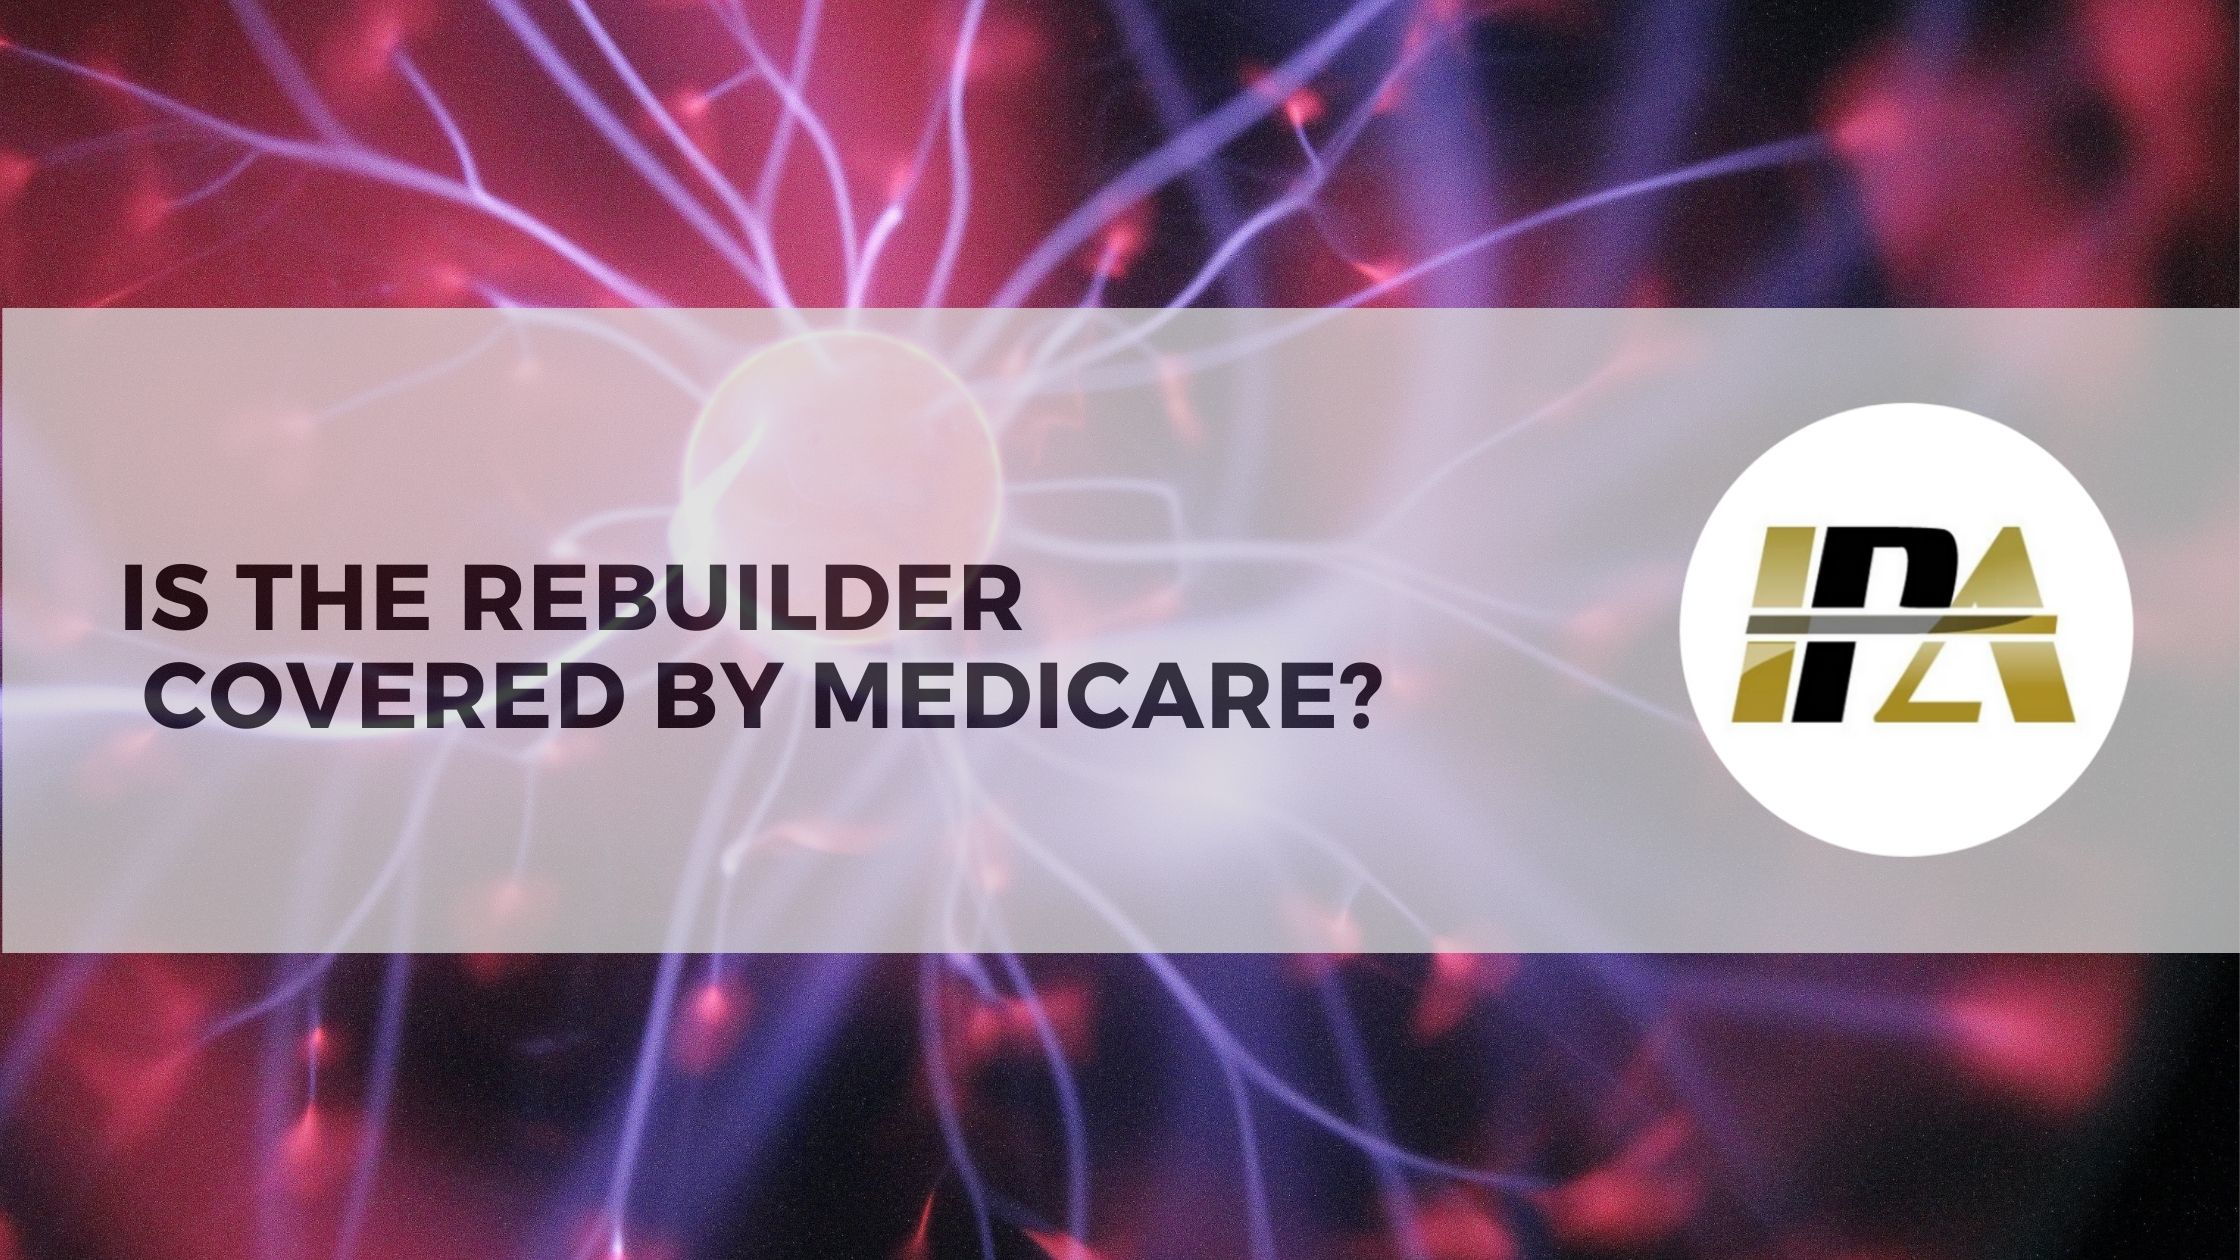 Rebuilder Covered by Medicare